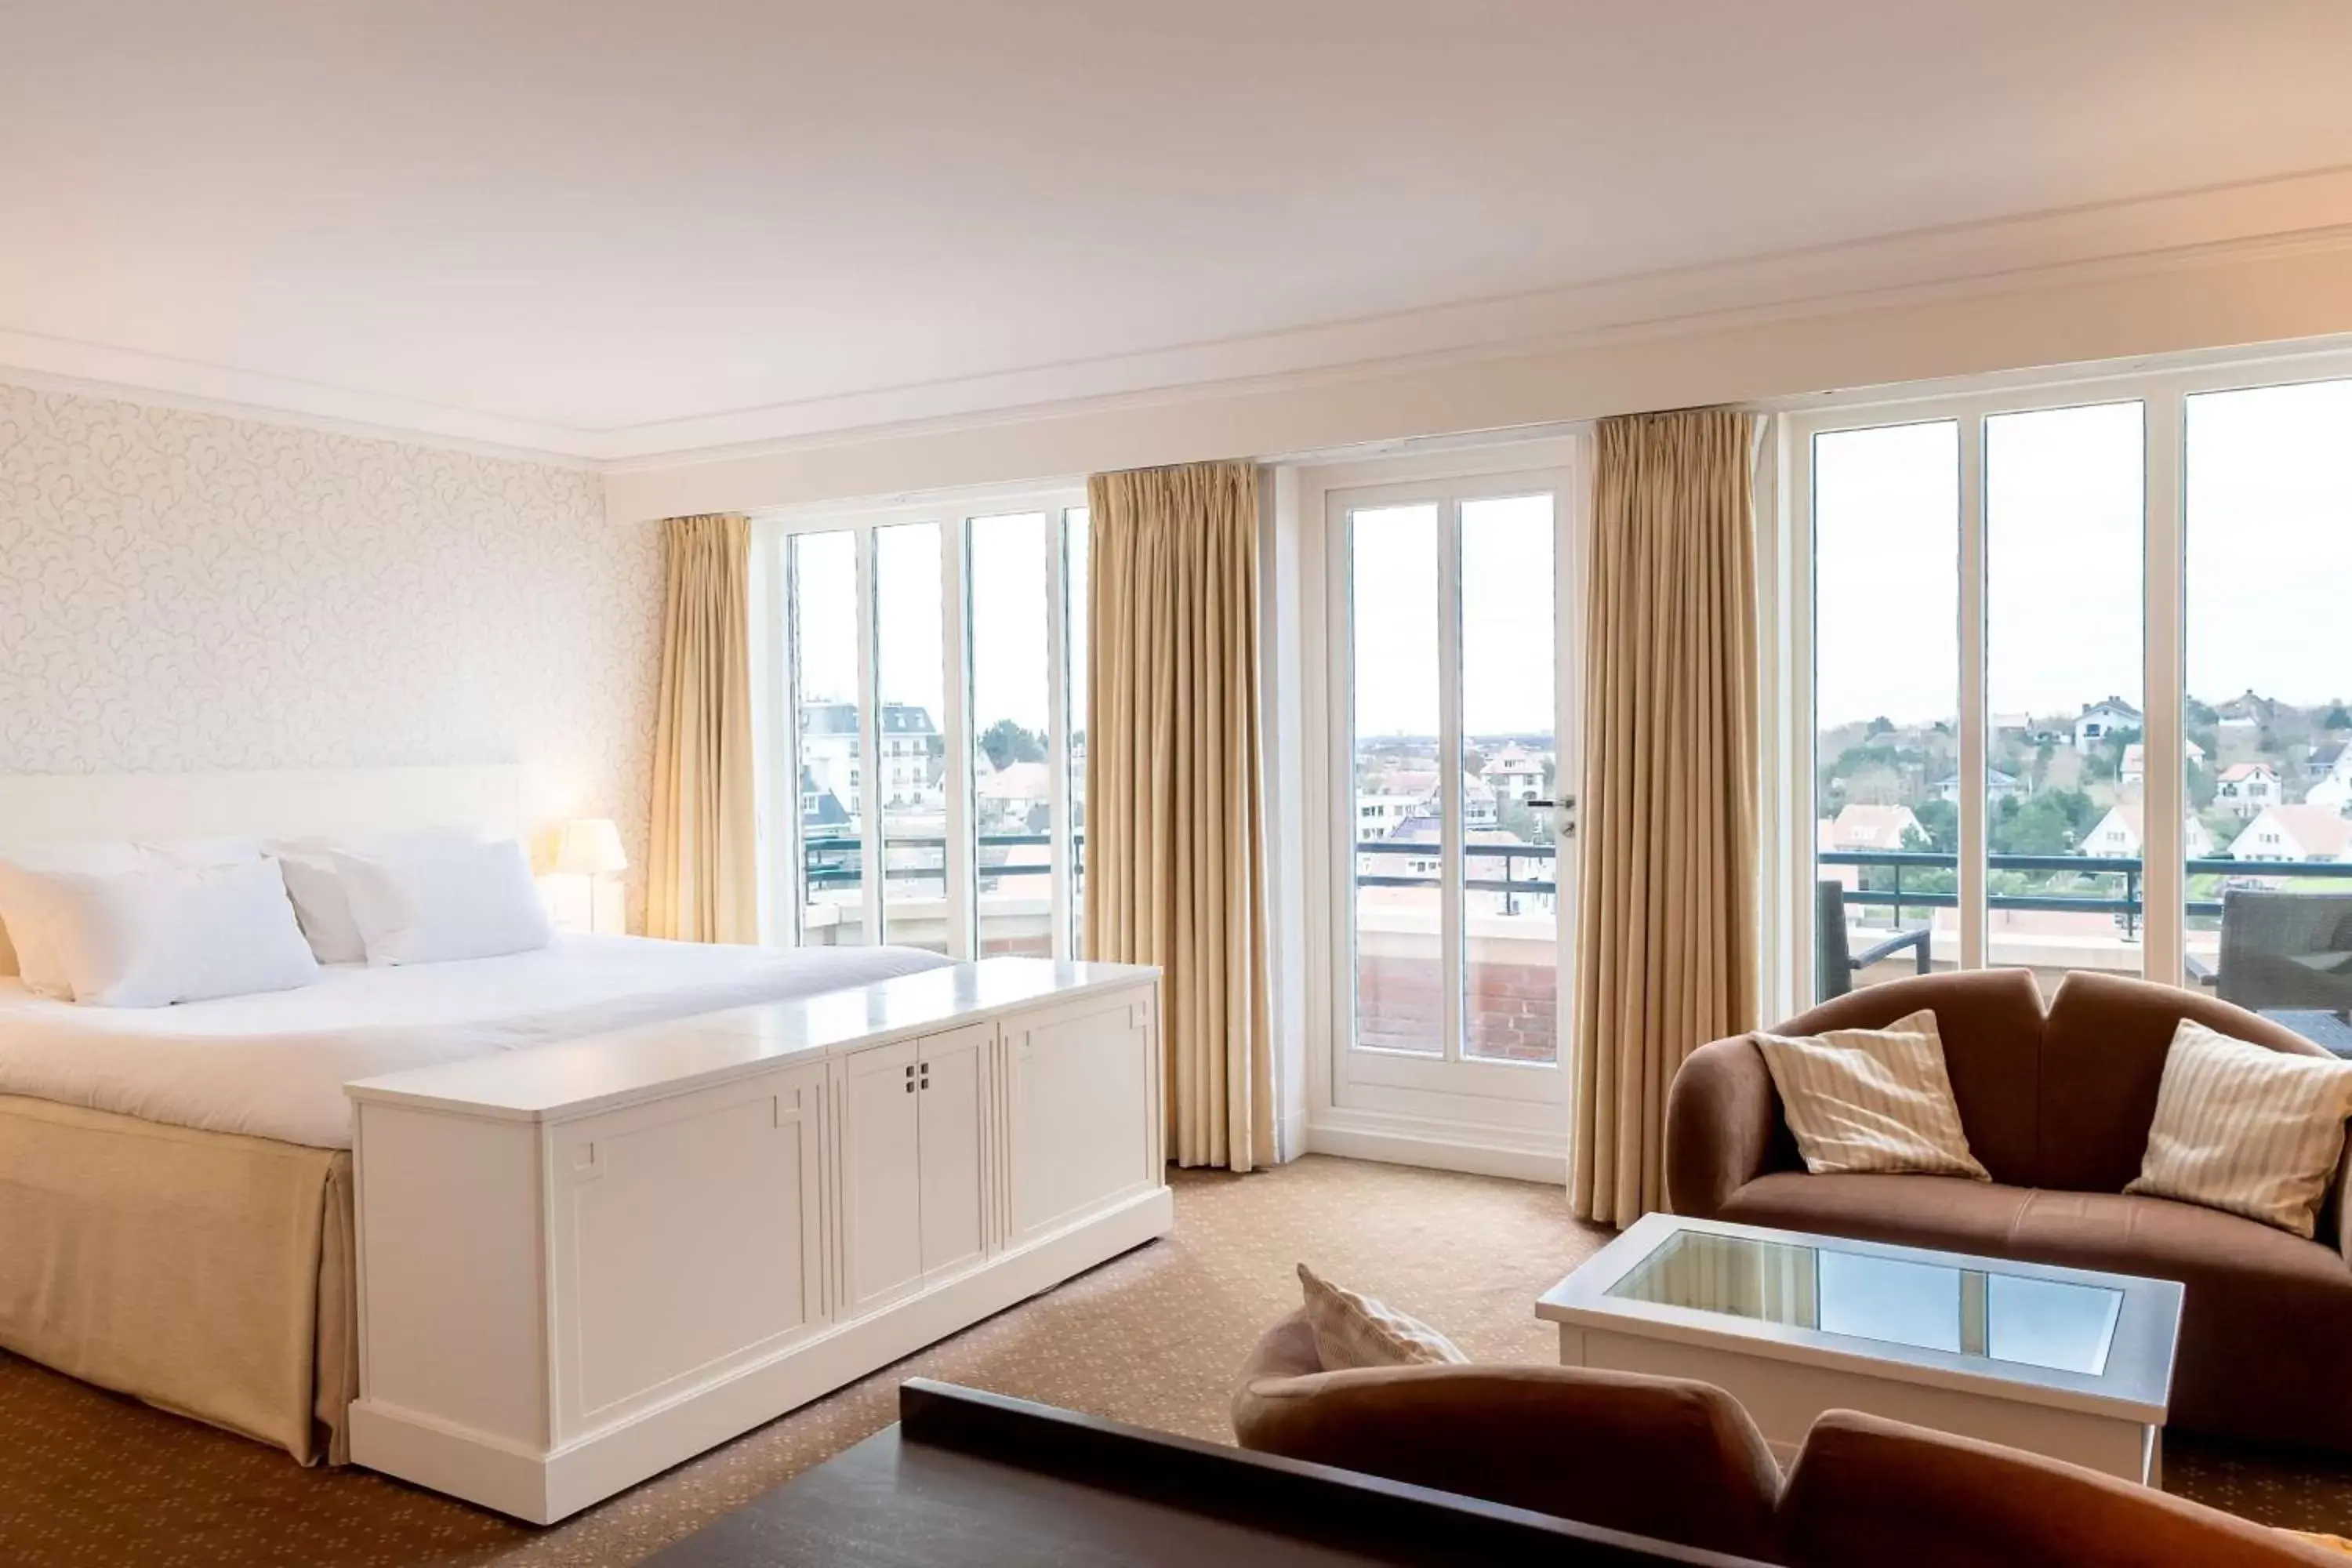 Bed, Seating Area in Van der Valk Palace Hotel Noordwijk